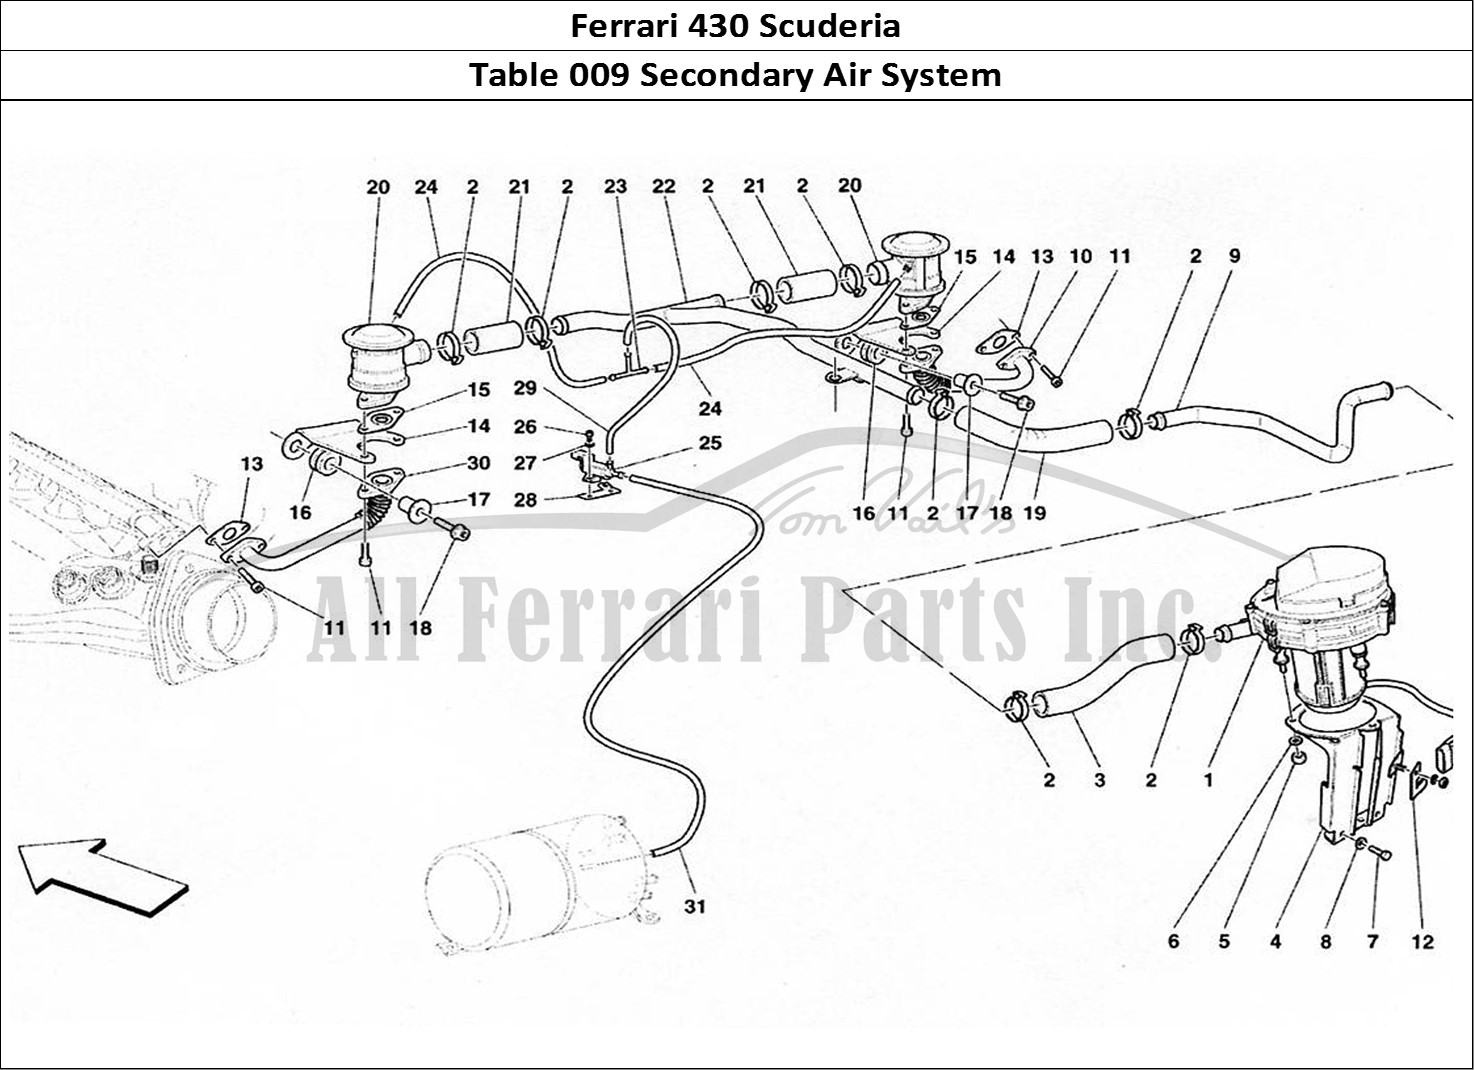 Ferrari Parts Ferrari 430 Scuderia Page 009 Secondary Air Supply